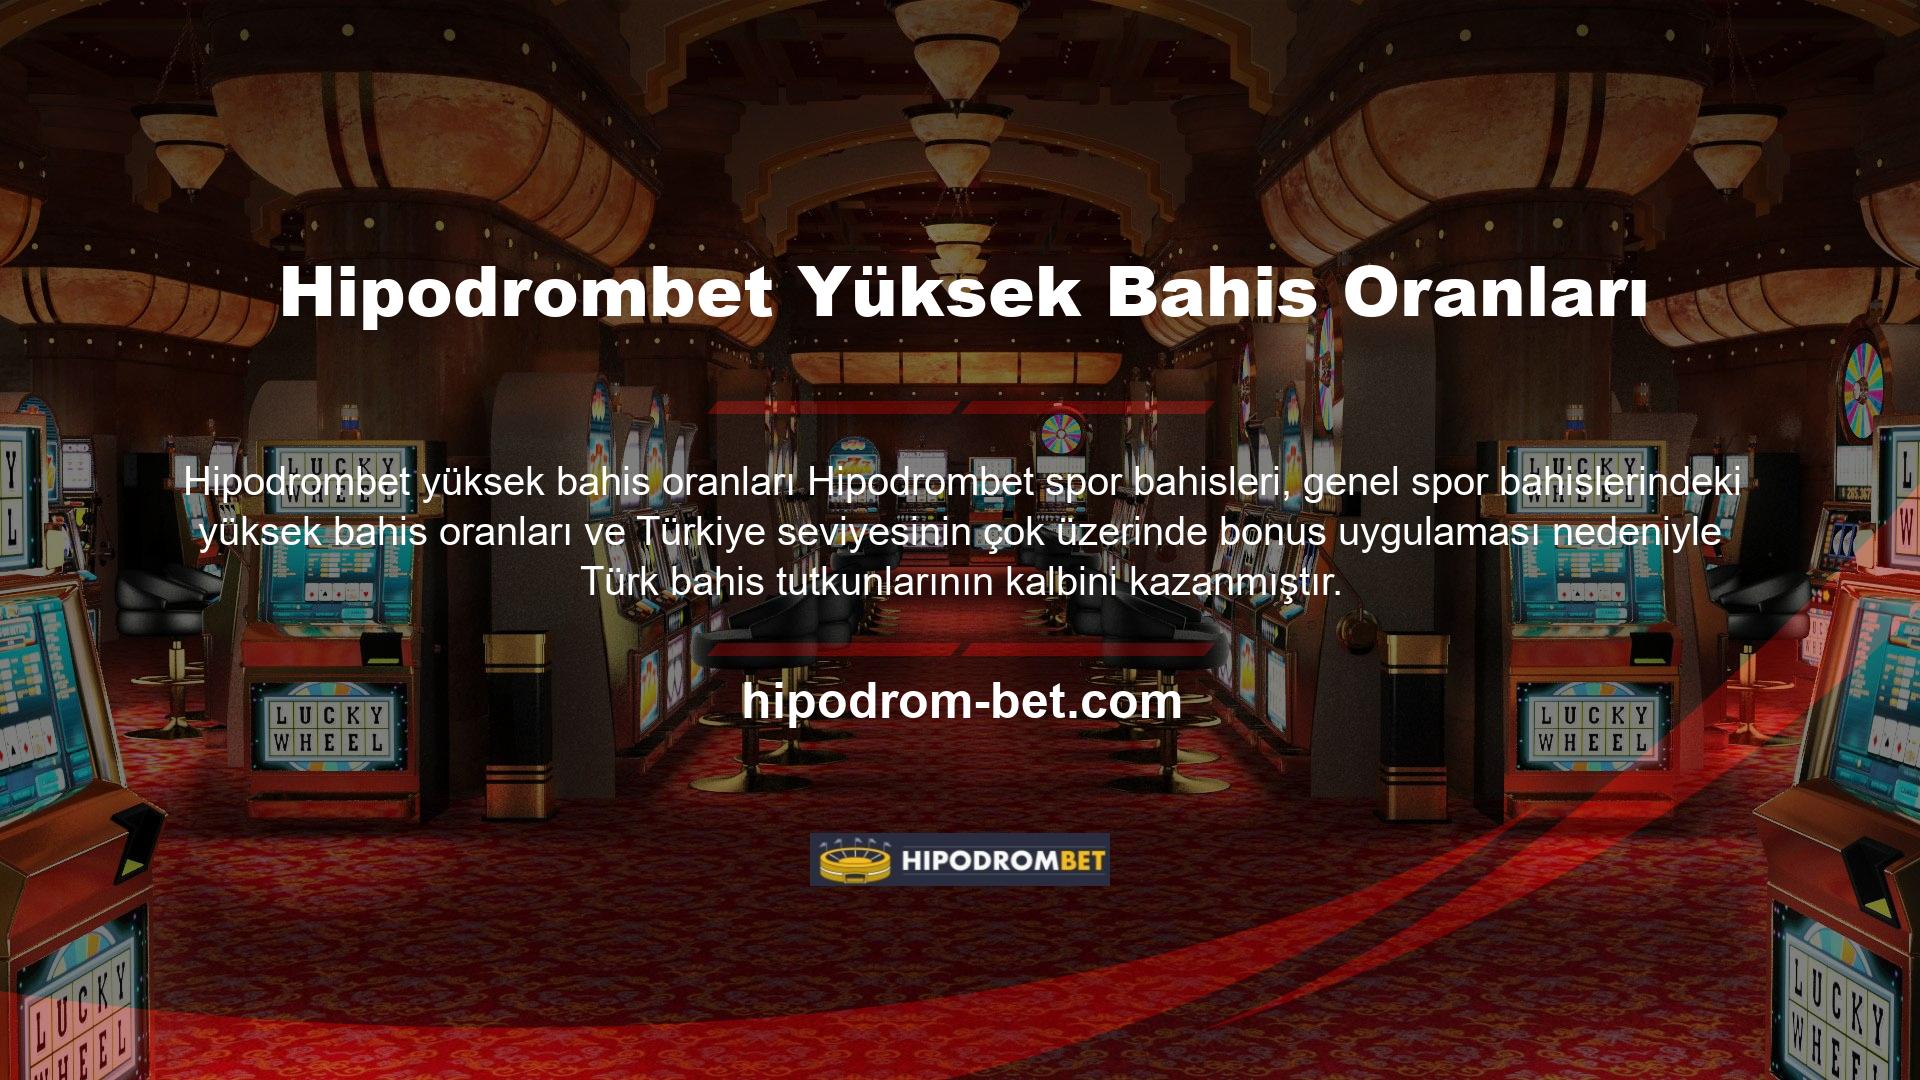 Hipodrombet, yüksek fiyatları nedeniyle Türk oyun tutkunları tarafından VIP üyelik sürecinde tercih ediliyor ve oyun sektöründe oldukça güçlü bir konuma sahip